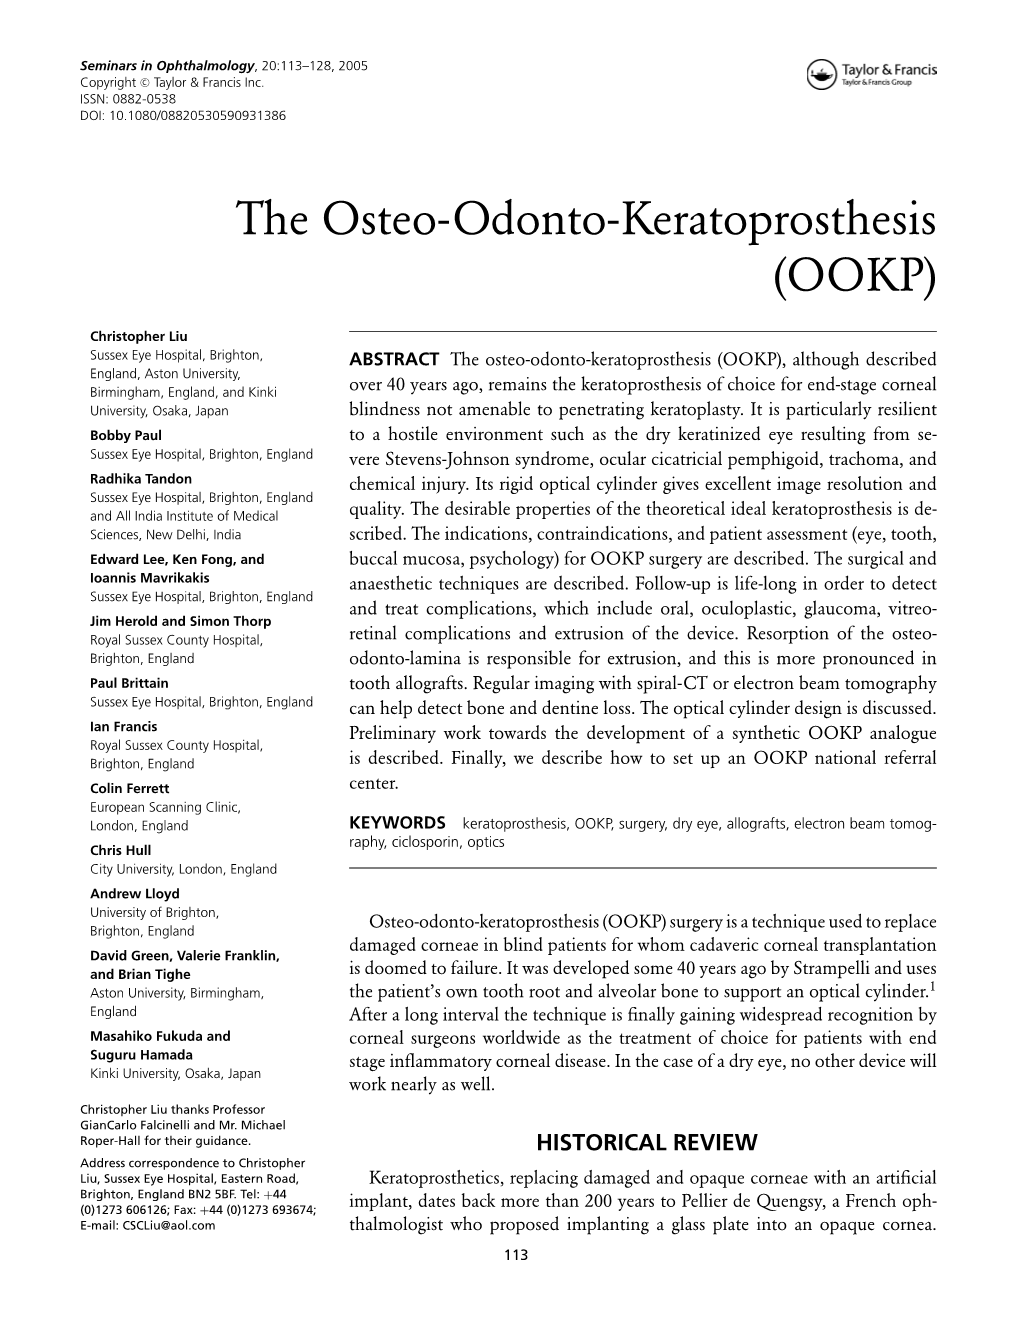 The Osteo-Odonto-Keratoprosthesis (OOKP)